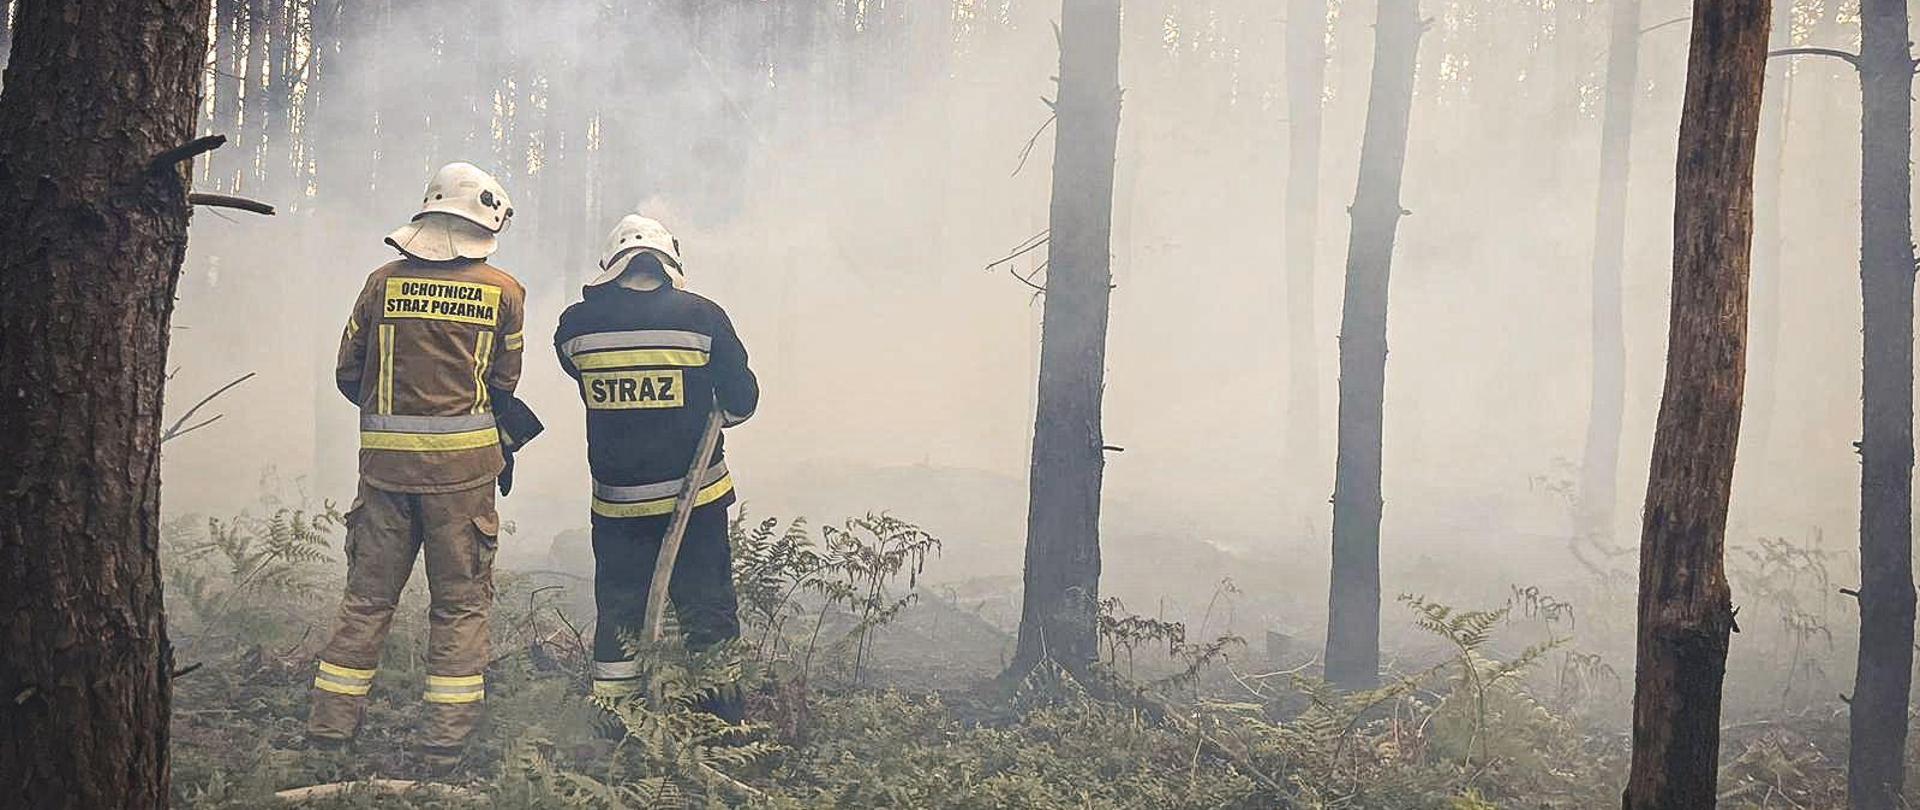 Strażacy gaszą pożar w lesie. Duże zadymienie.